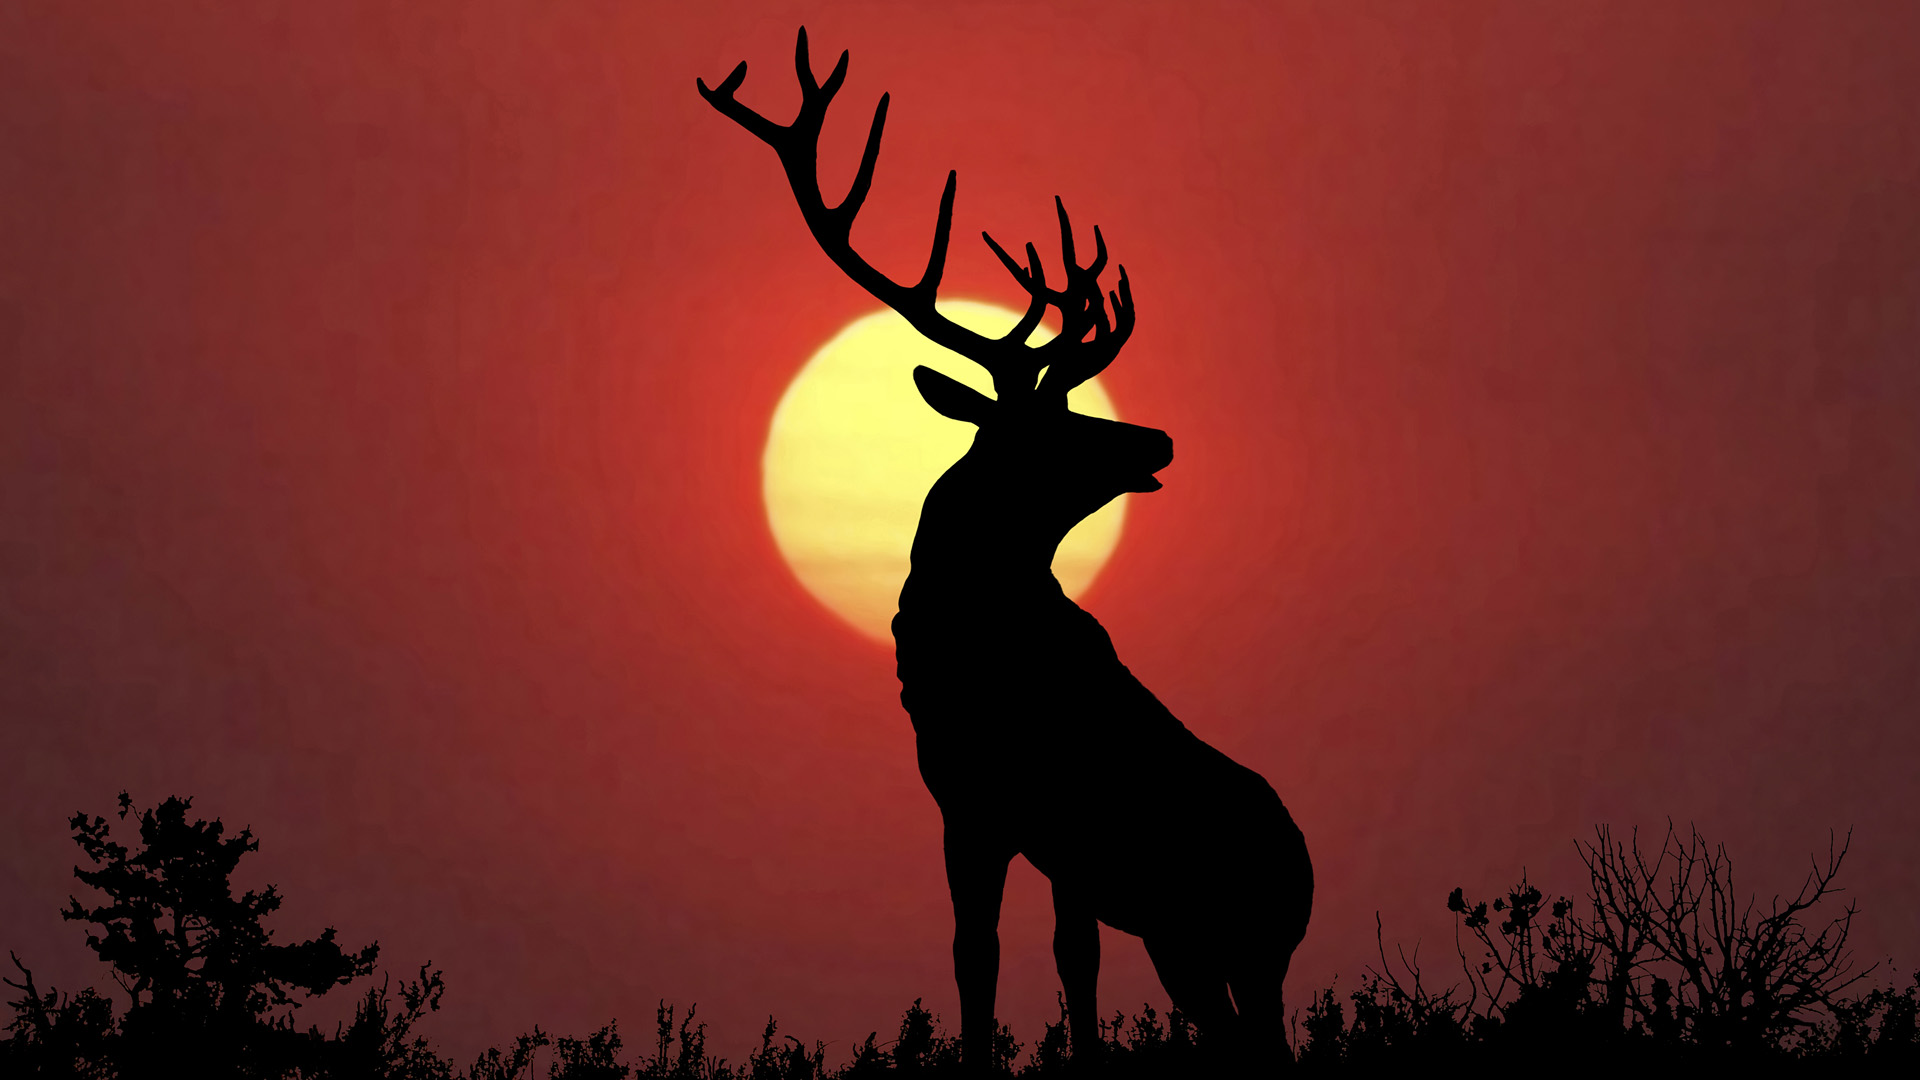 Cool Backgrounds Of Deer - HD Wallpaper 